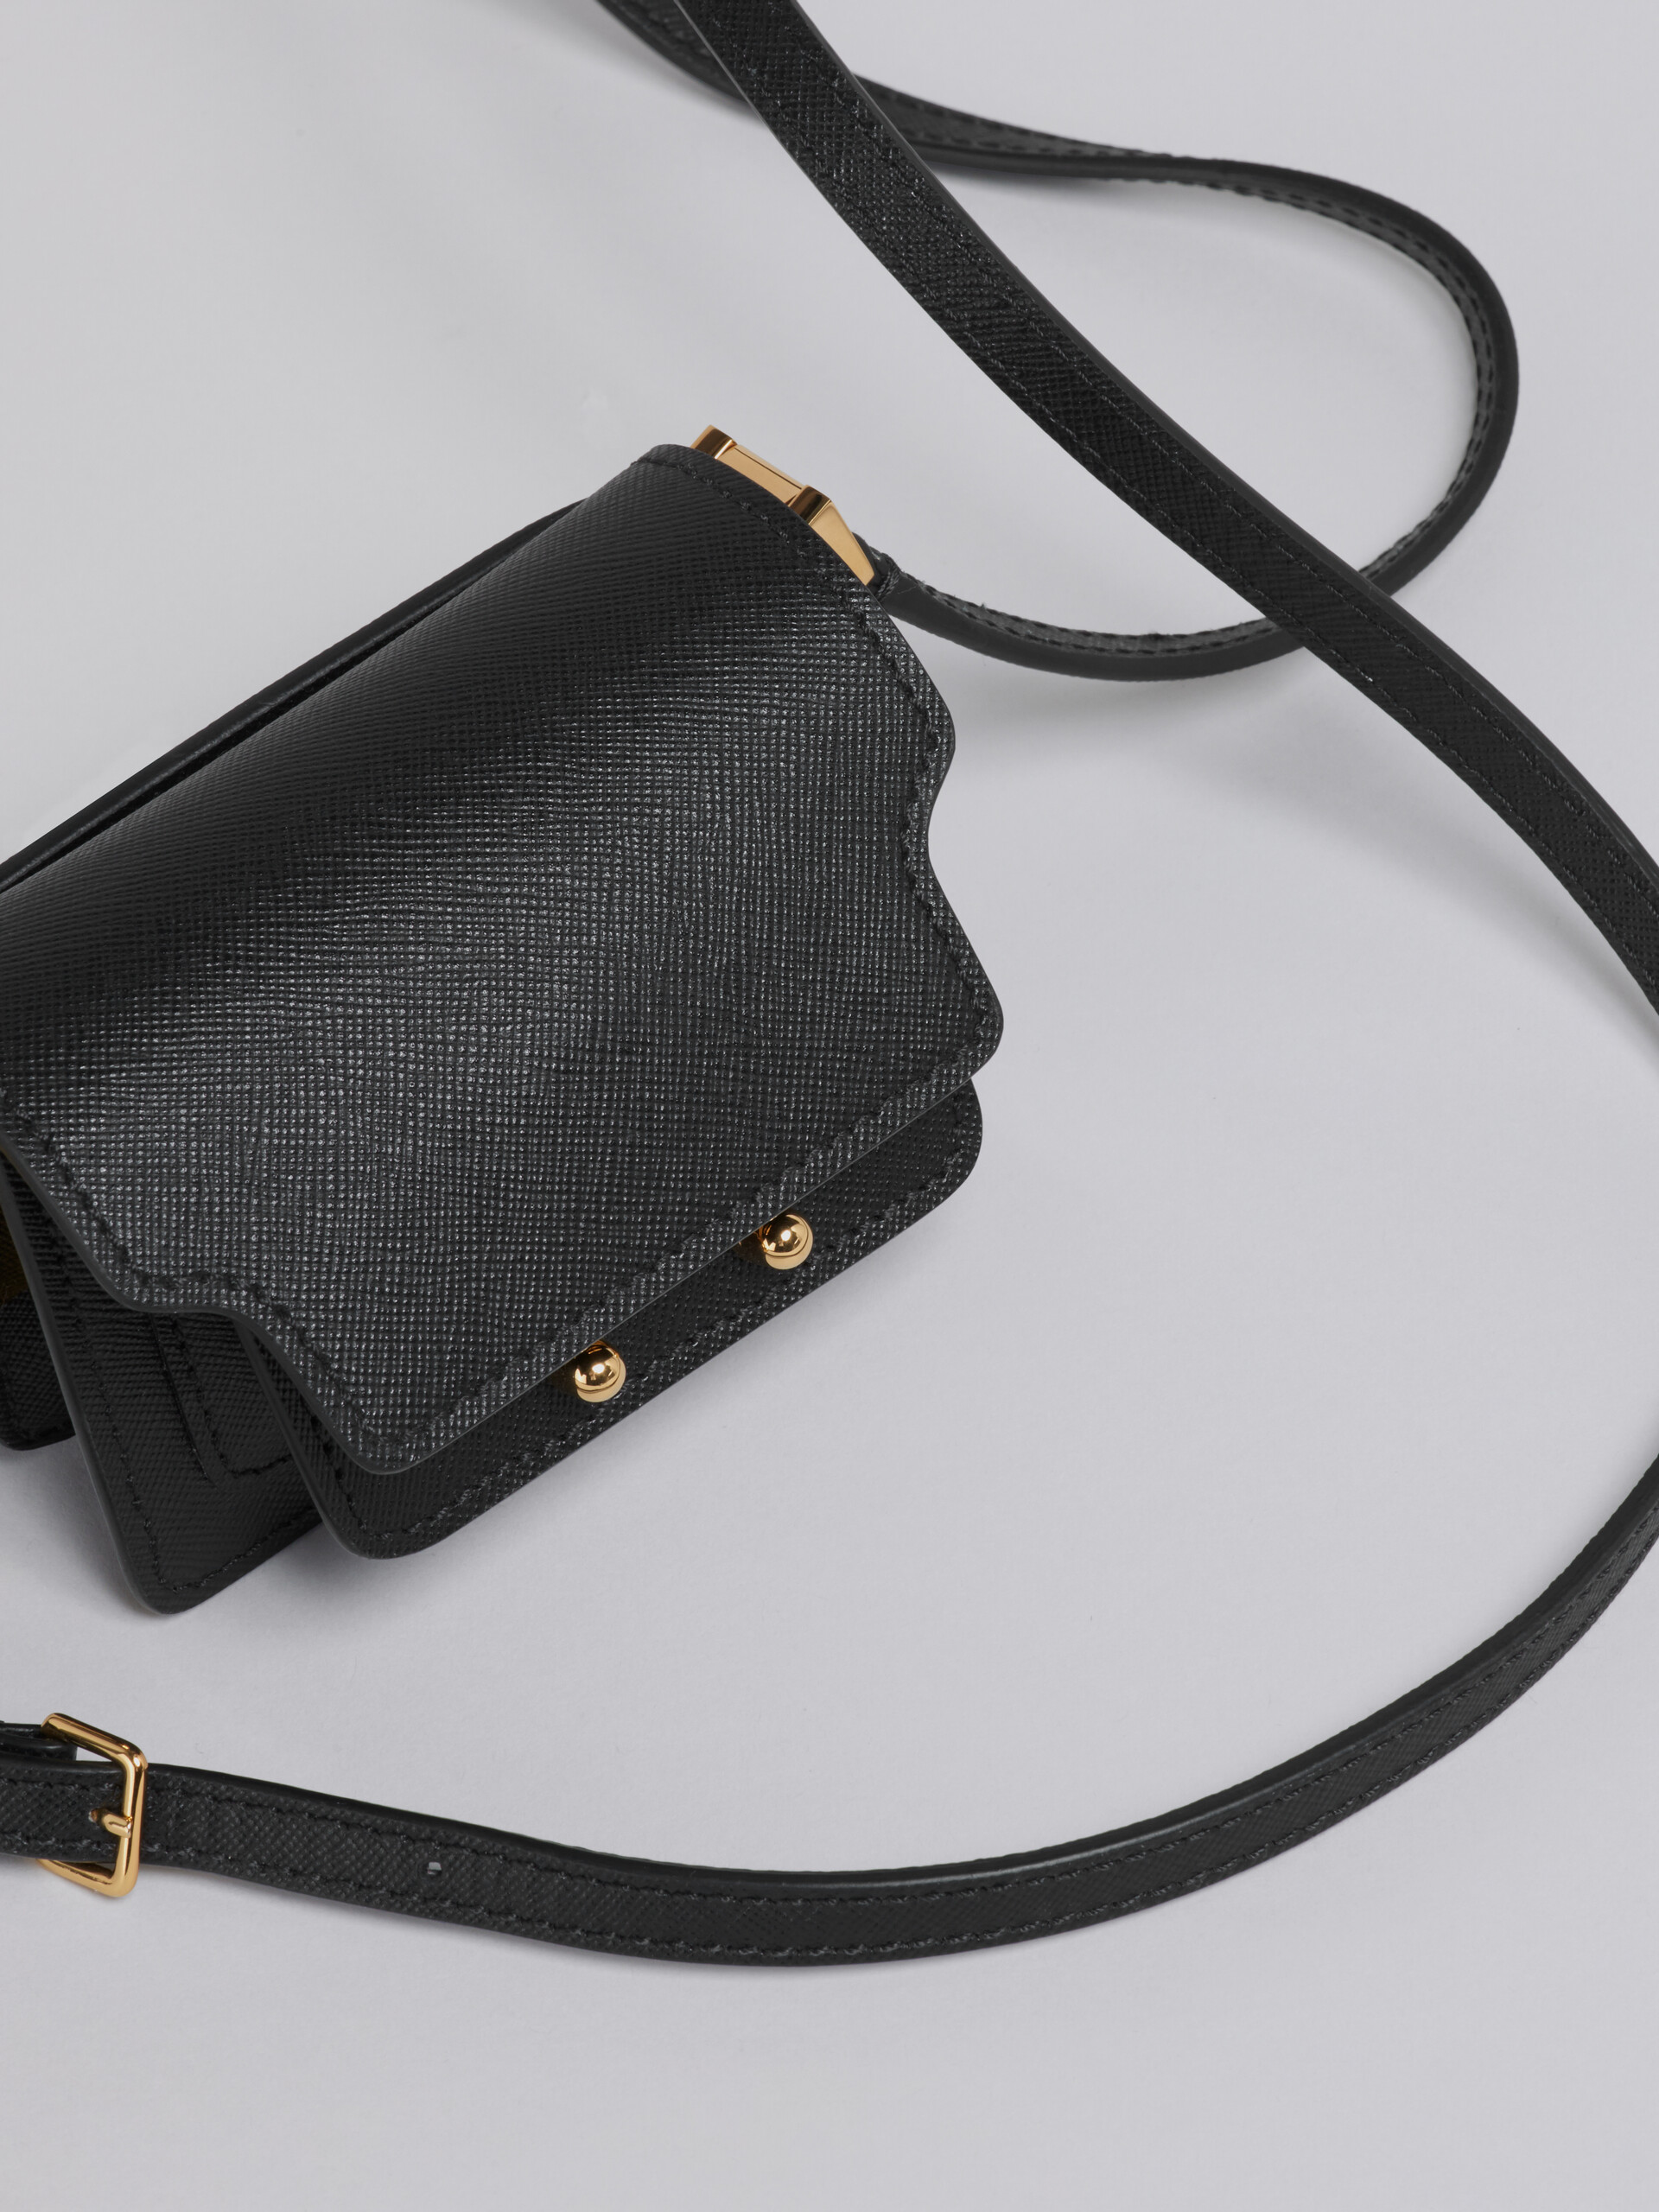 Tasche TRUNK aus schwarzem Saffiano-Kalbsleder - Schultertaschen - Image 4